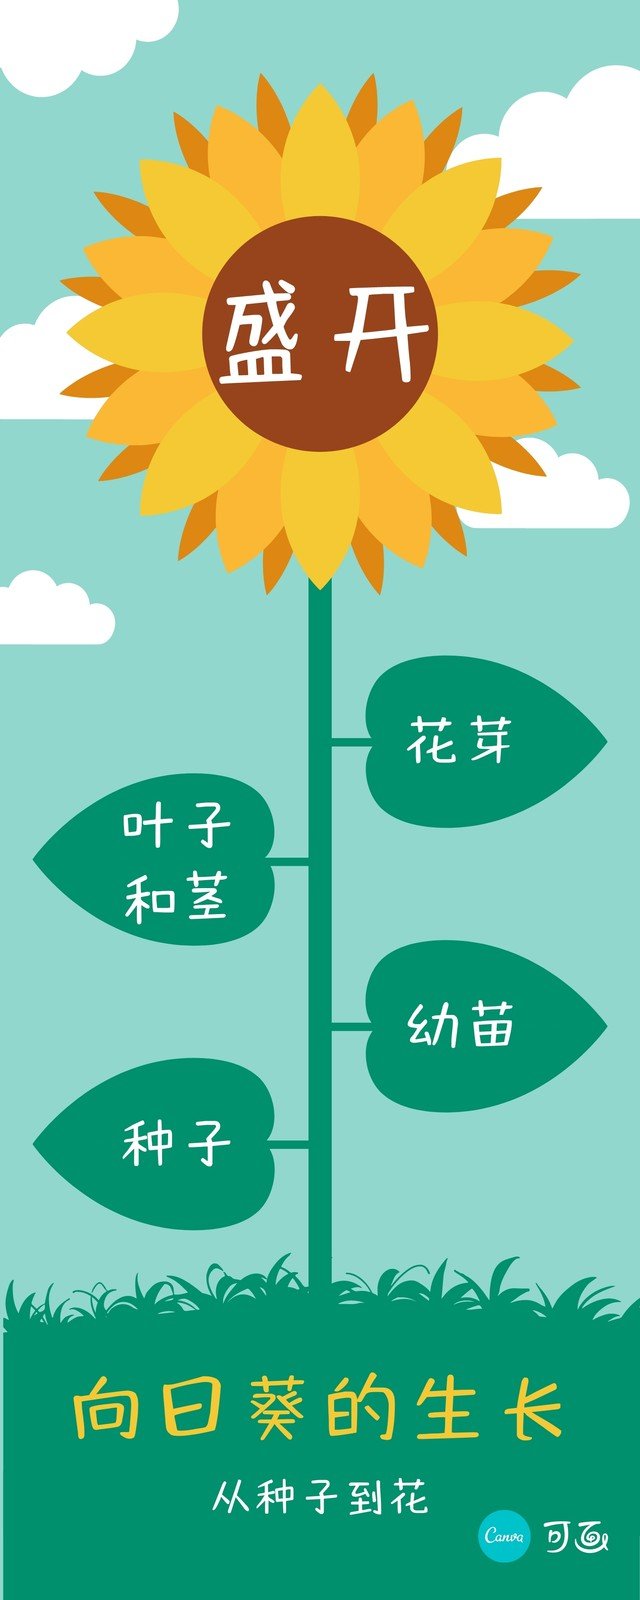 绿黄色向日葵的生长卡通介绍中文信息图表